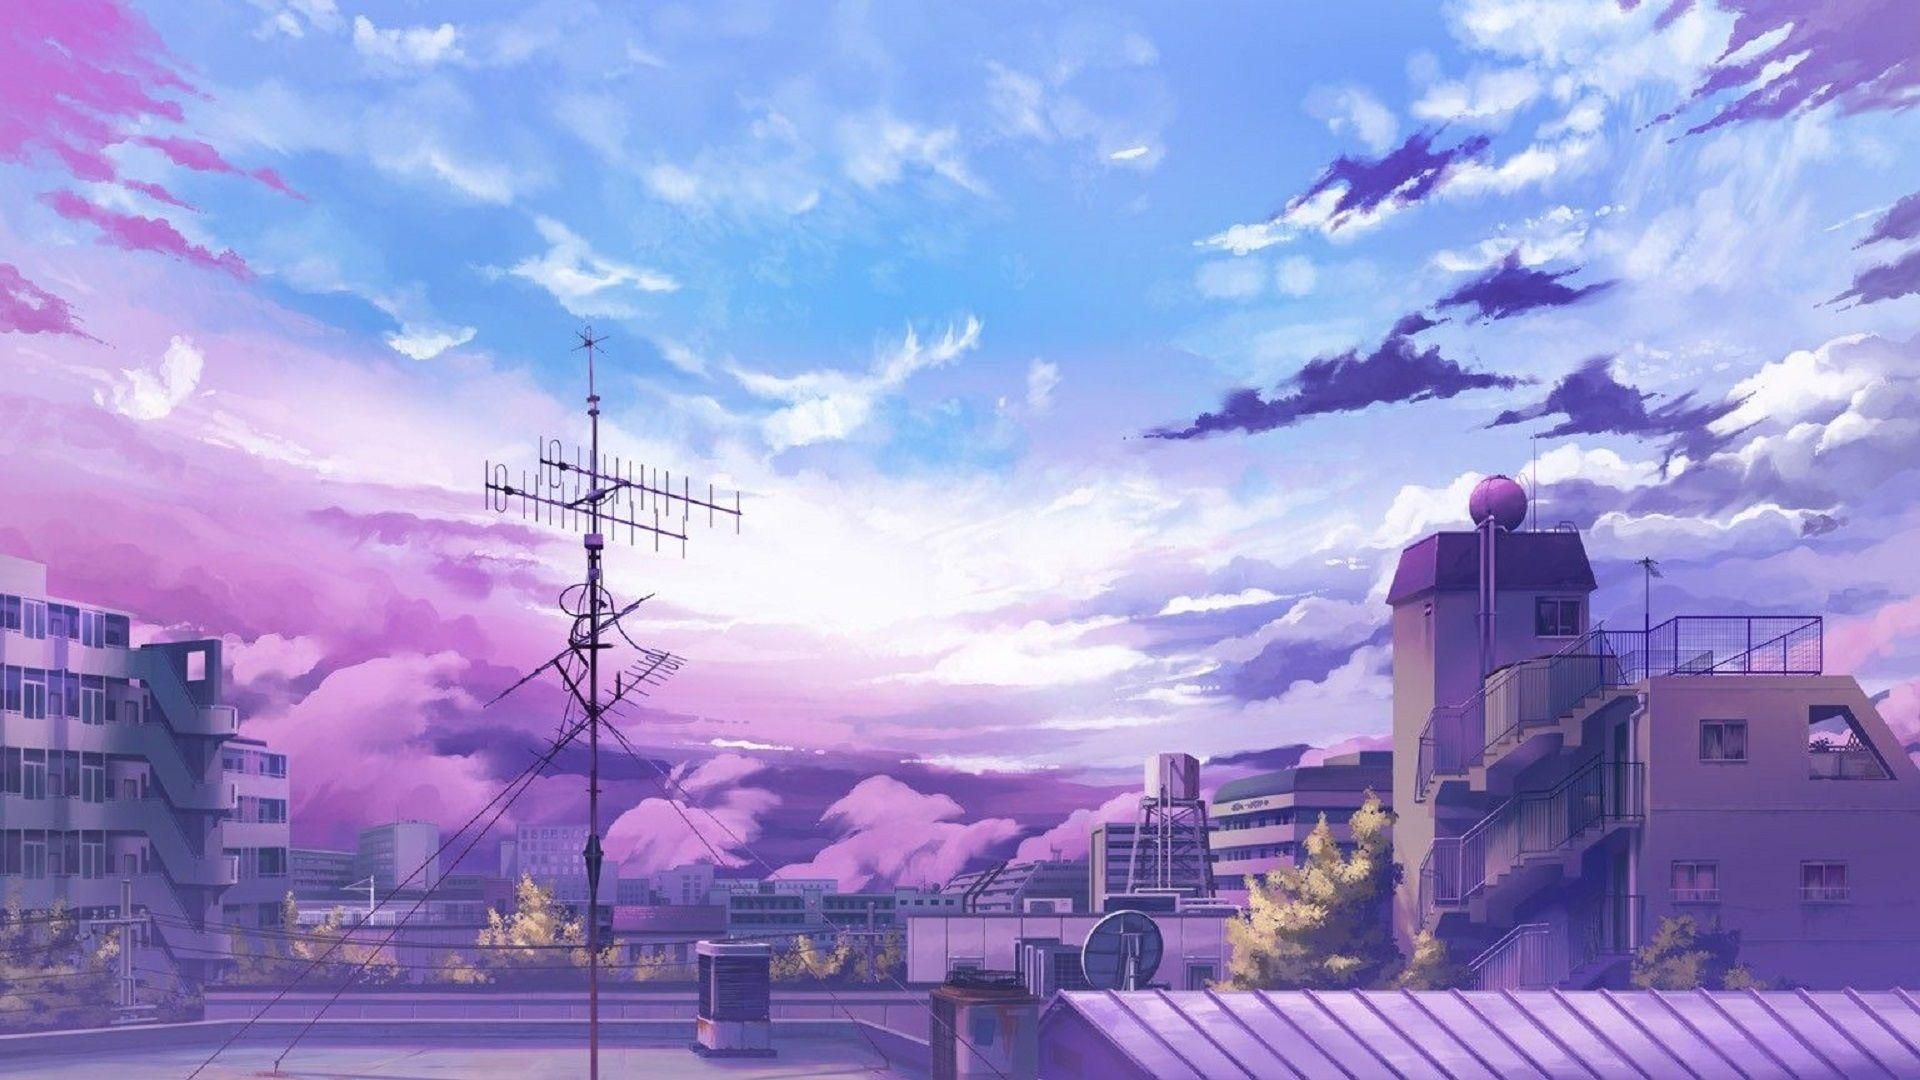 Anime Wallpaper Aesthetic. Anime background wallpaper, Anime background, Anime scenery wallpaper